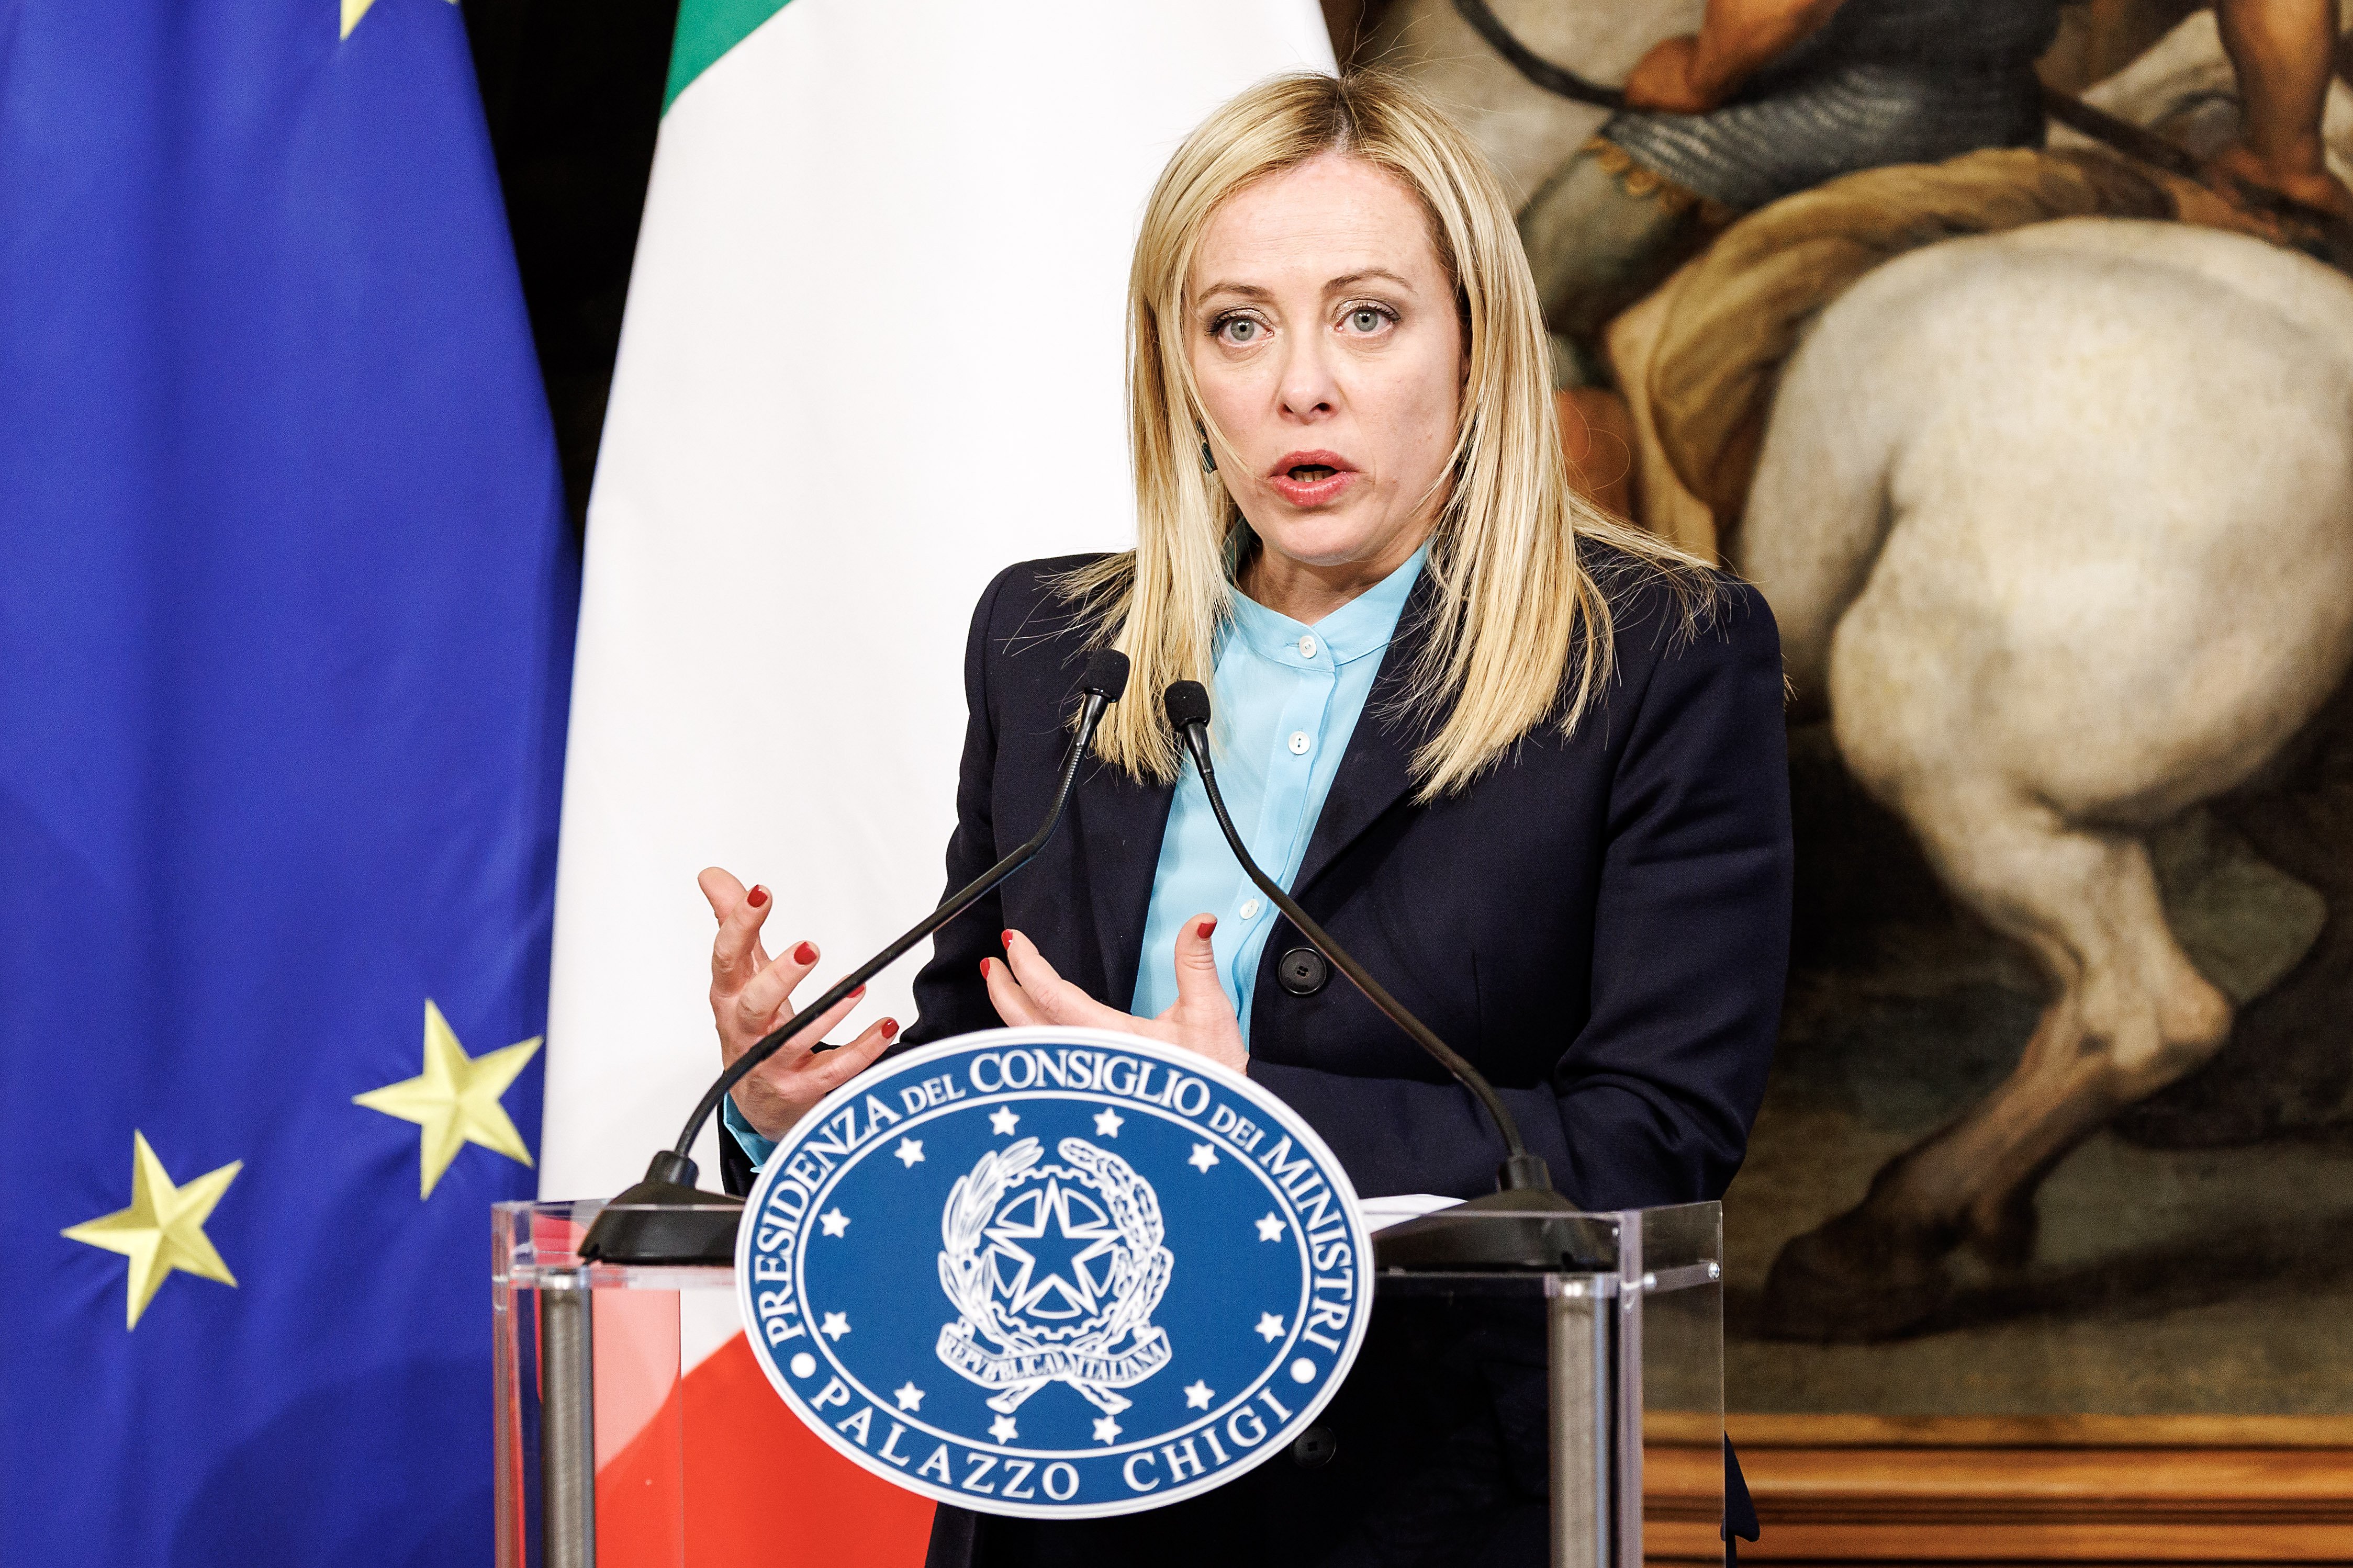 Giorgia Meloni anuncia que defensarà el Mediterrani "des de Balears fins als estrets turcs"